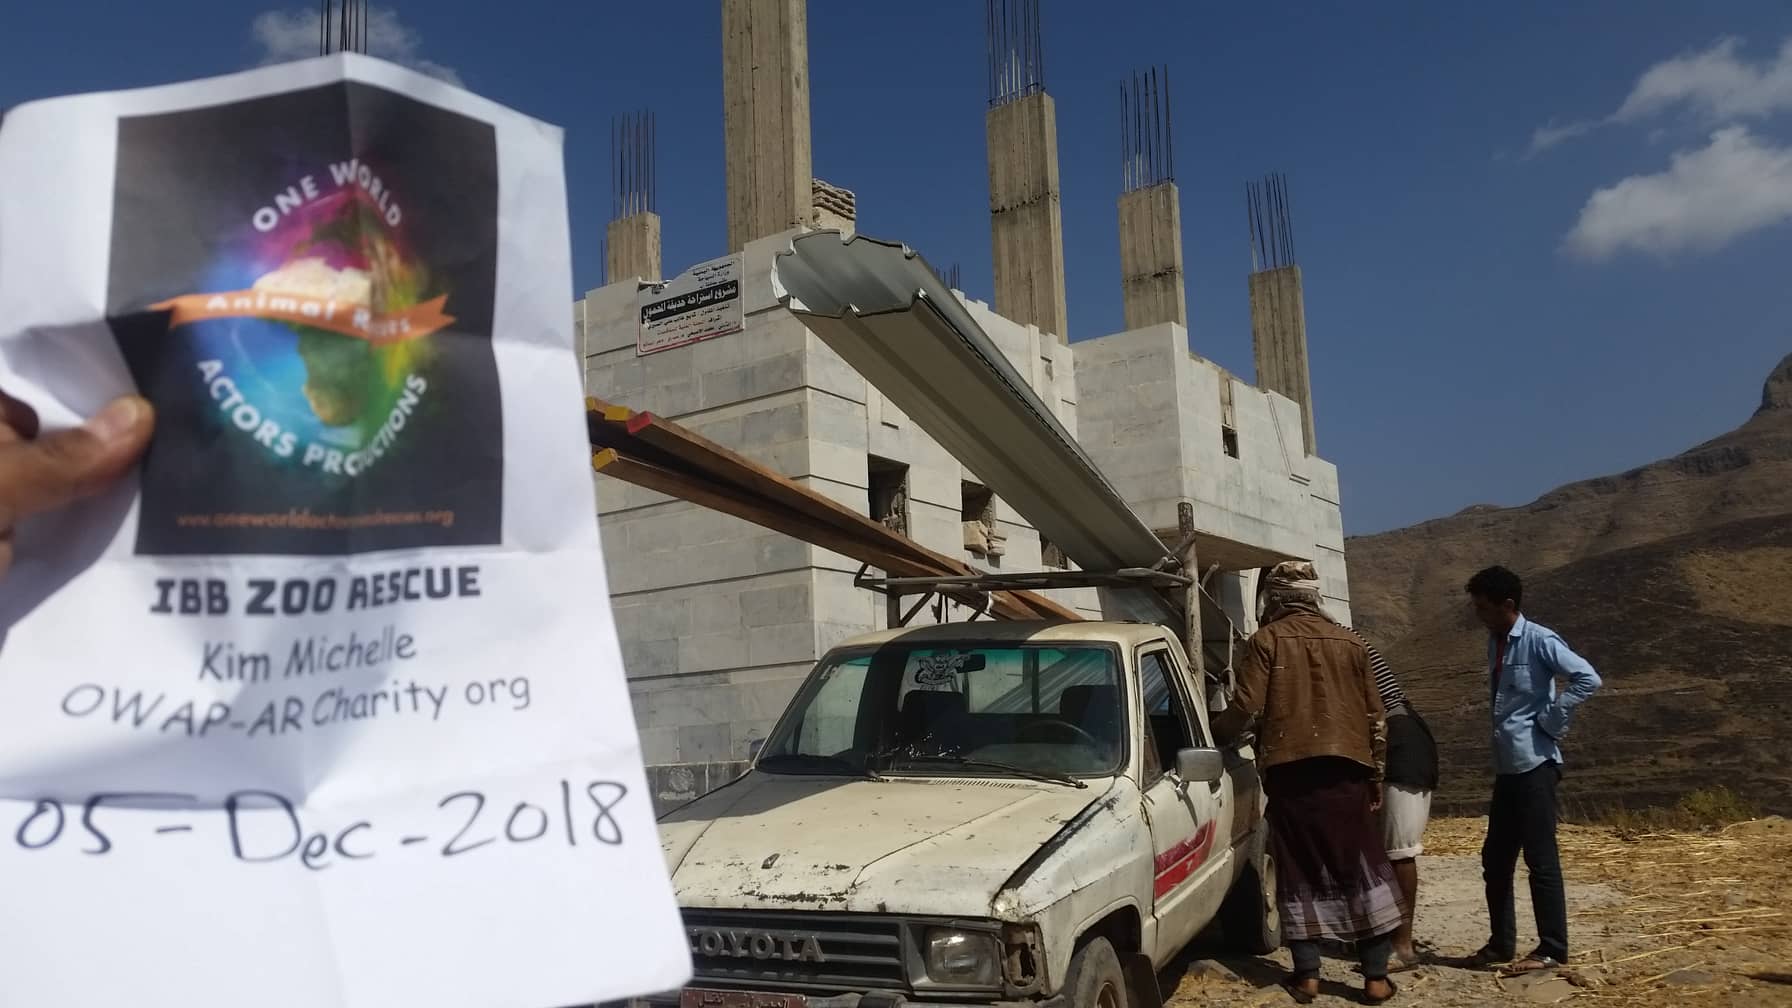 ibb zoo stables project 5 DEC 2018 by OWAP AR yemen rescue hisham sig for OWAP-AR.jpg